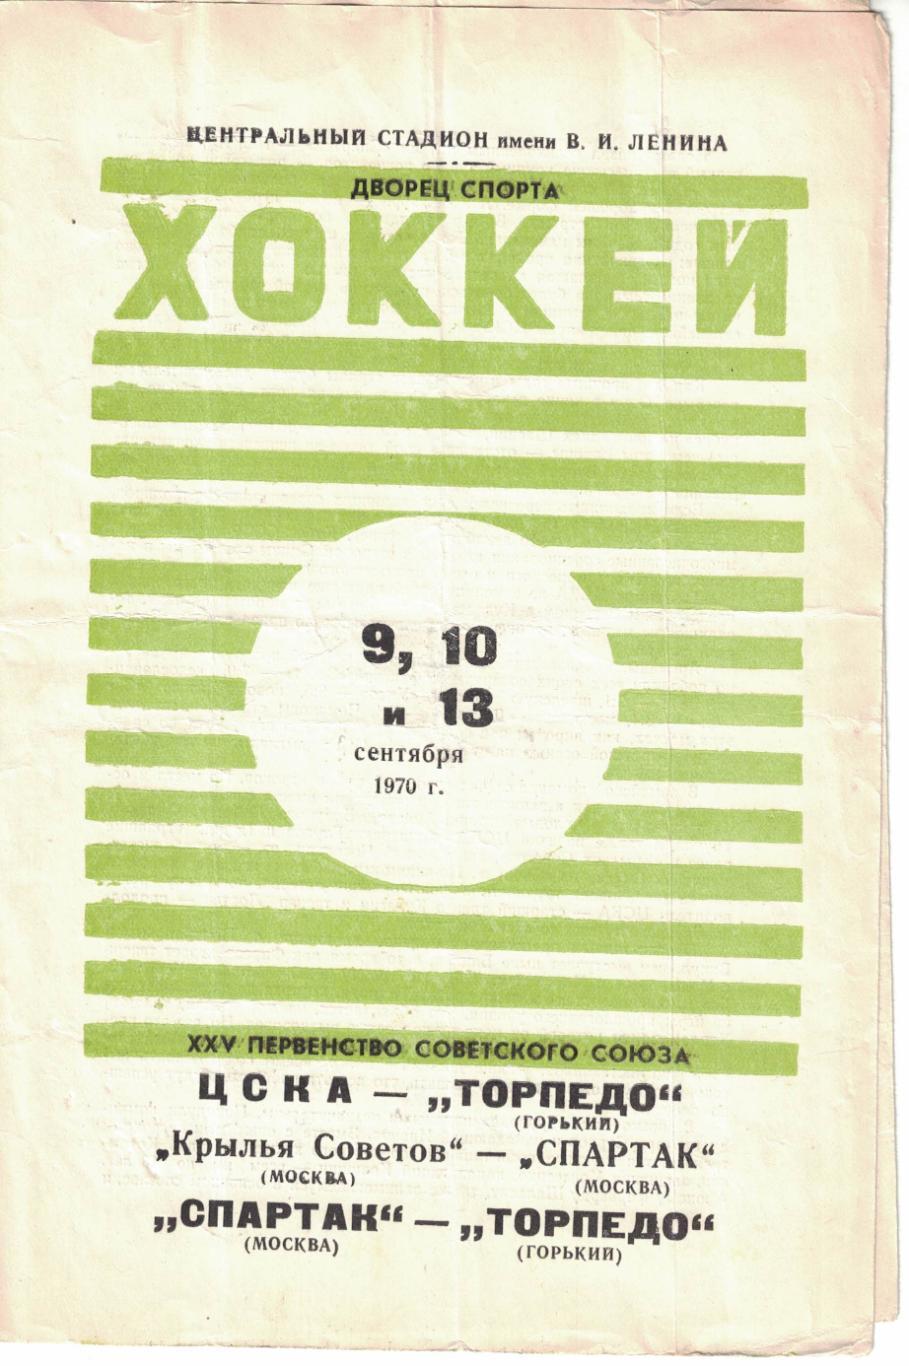 ЦСКА и Спартак М - Торпедо Г, Крылья Советов М - Спартак М 9,10 и 13.09.1970